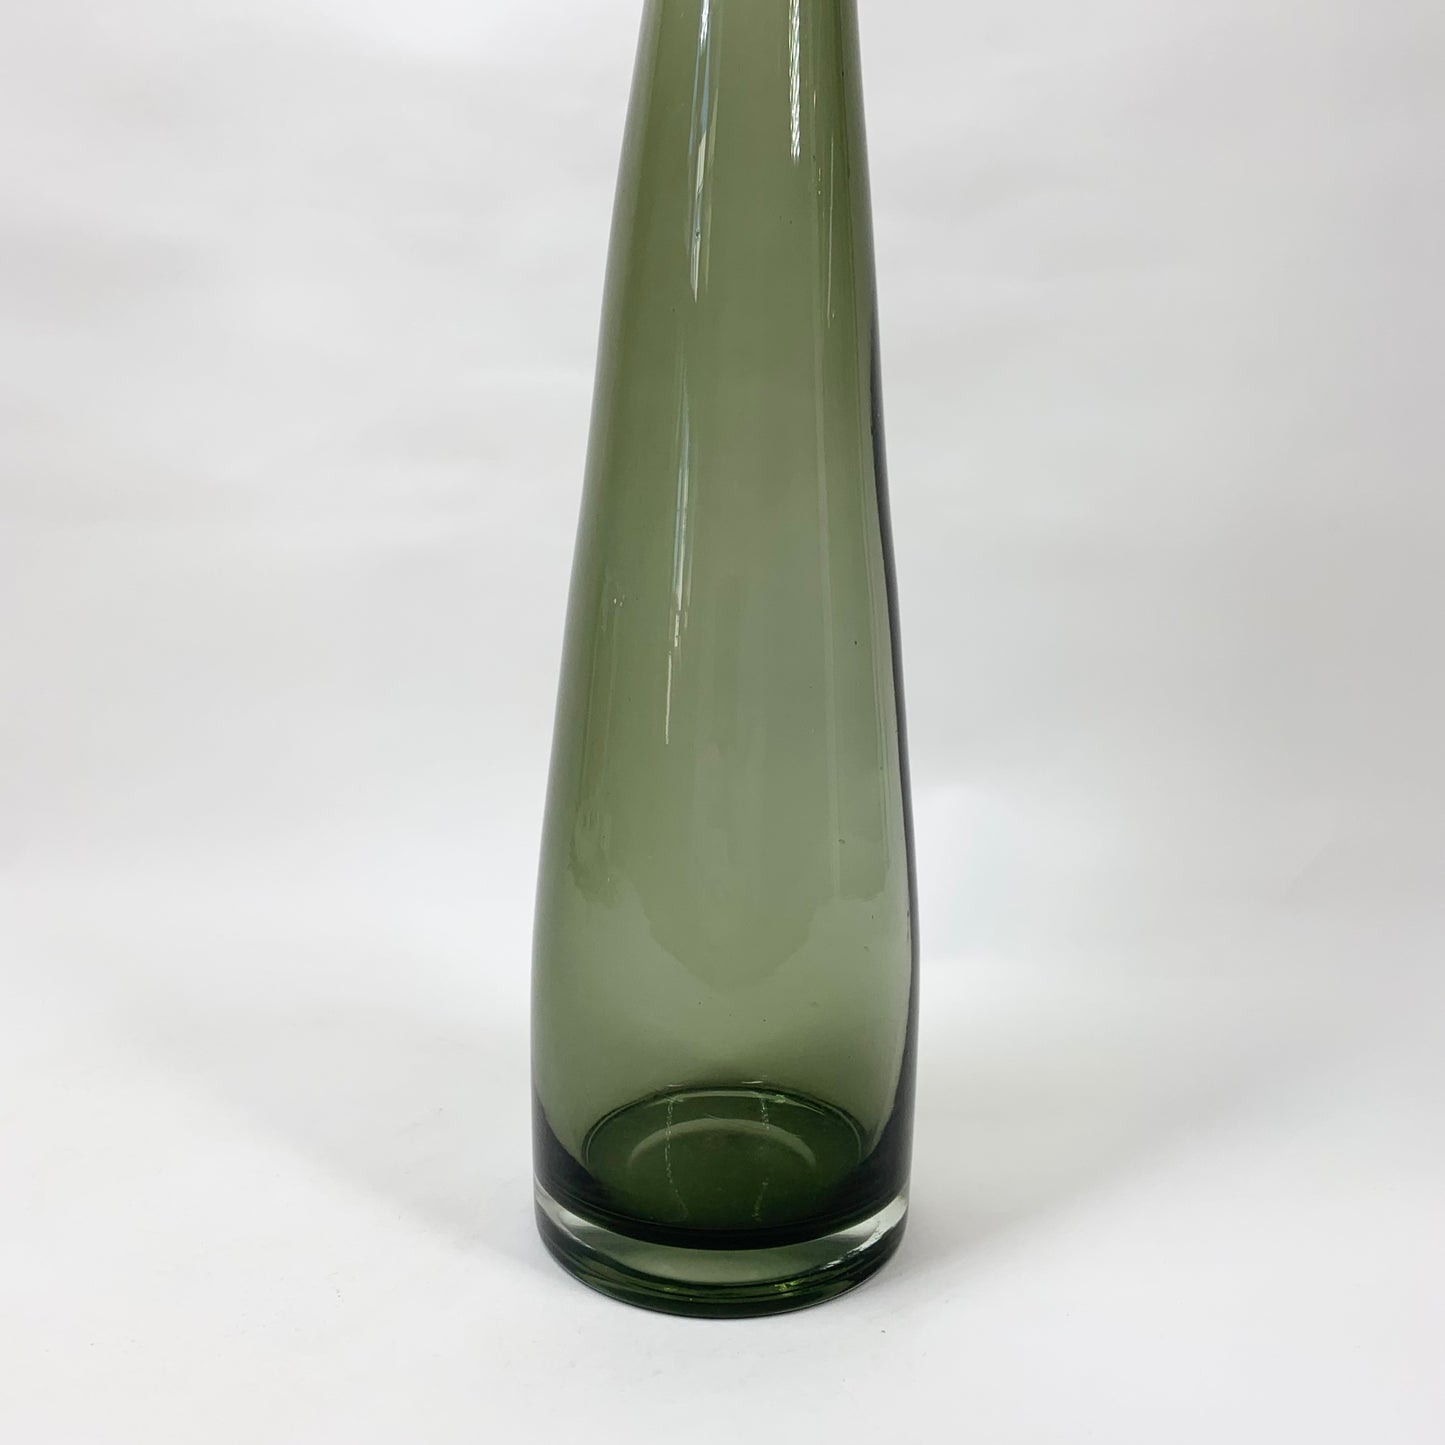 Retro hand made glass bottle vase